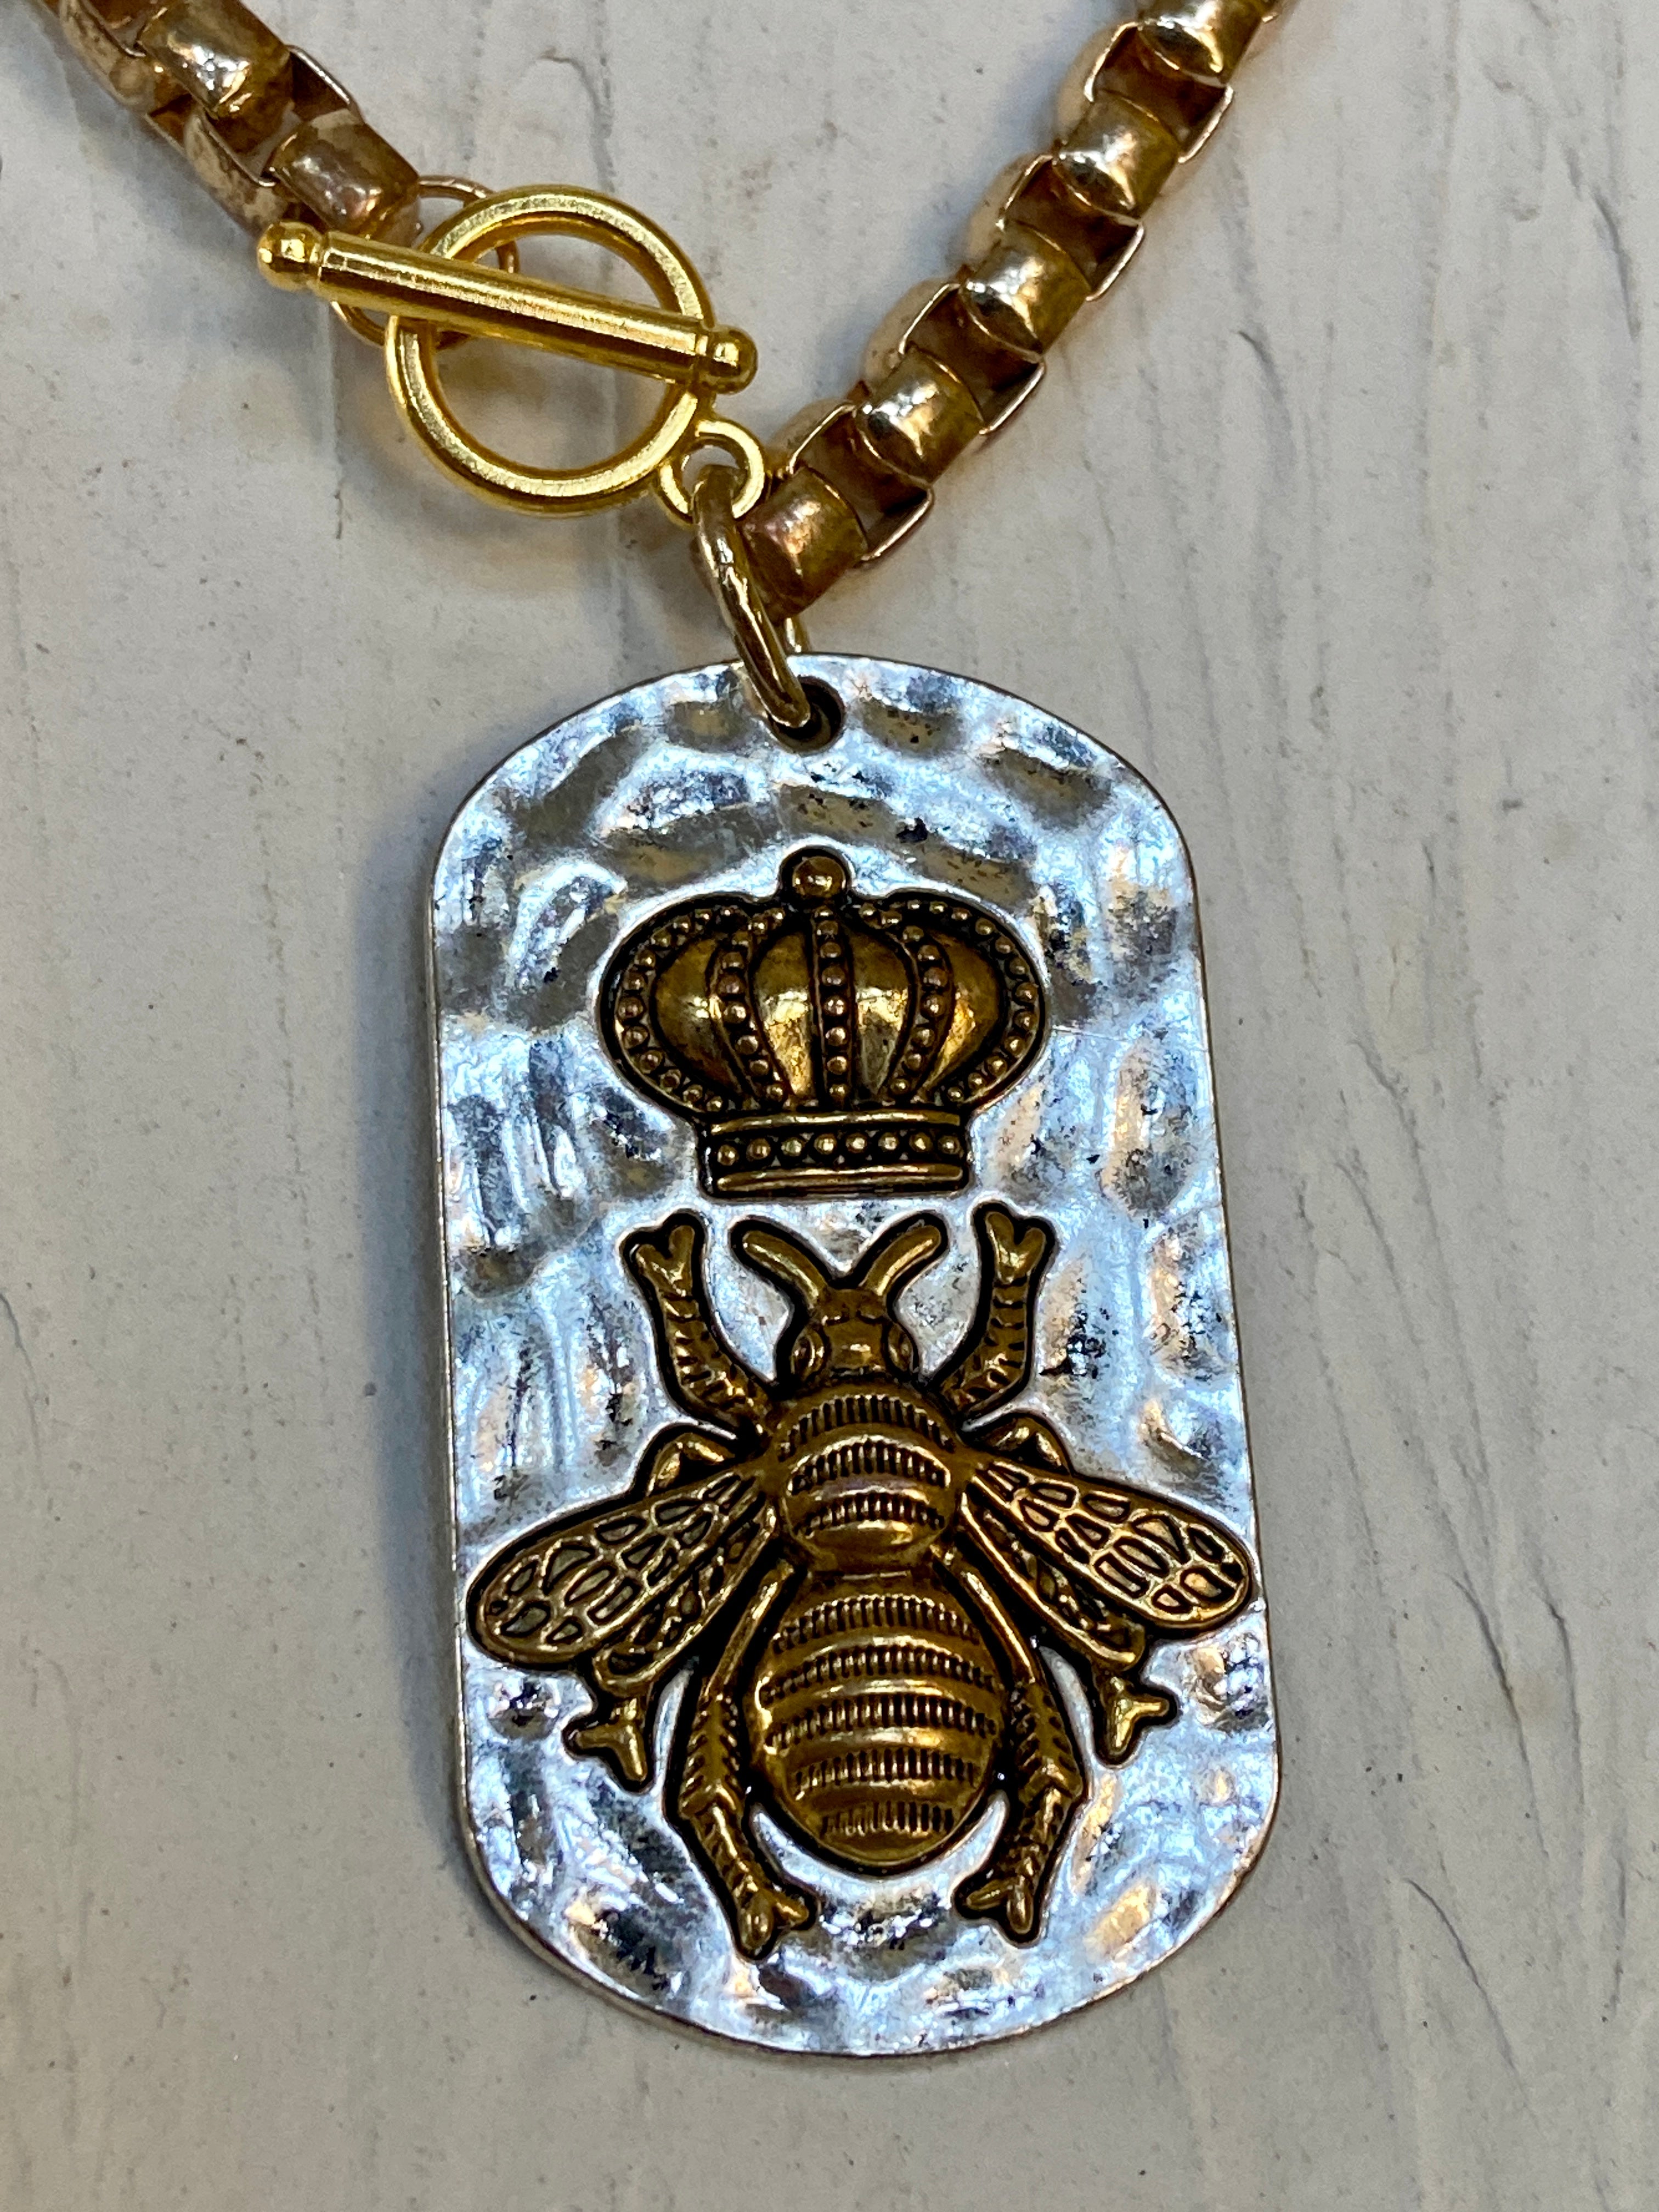 Queen Bee in vintage choker